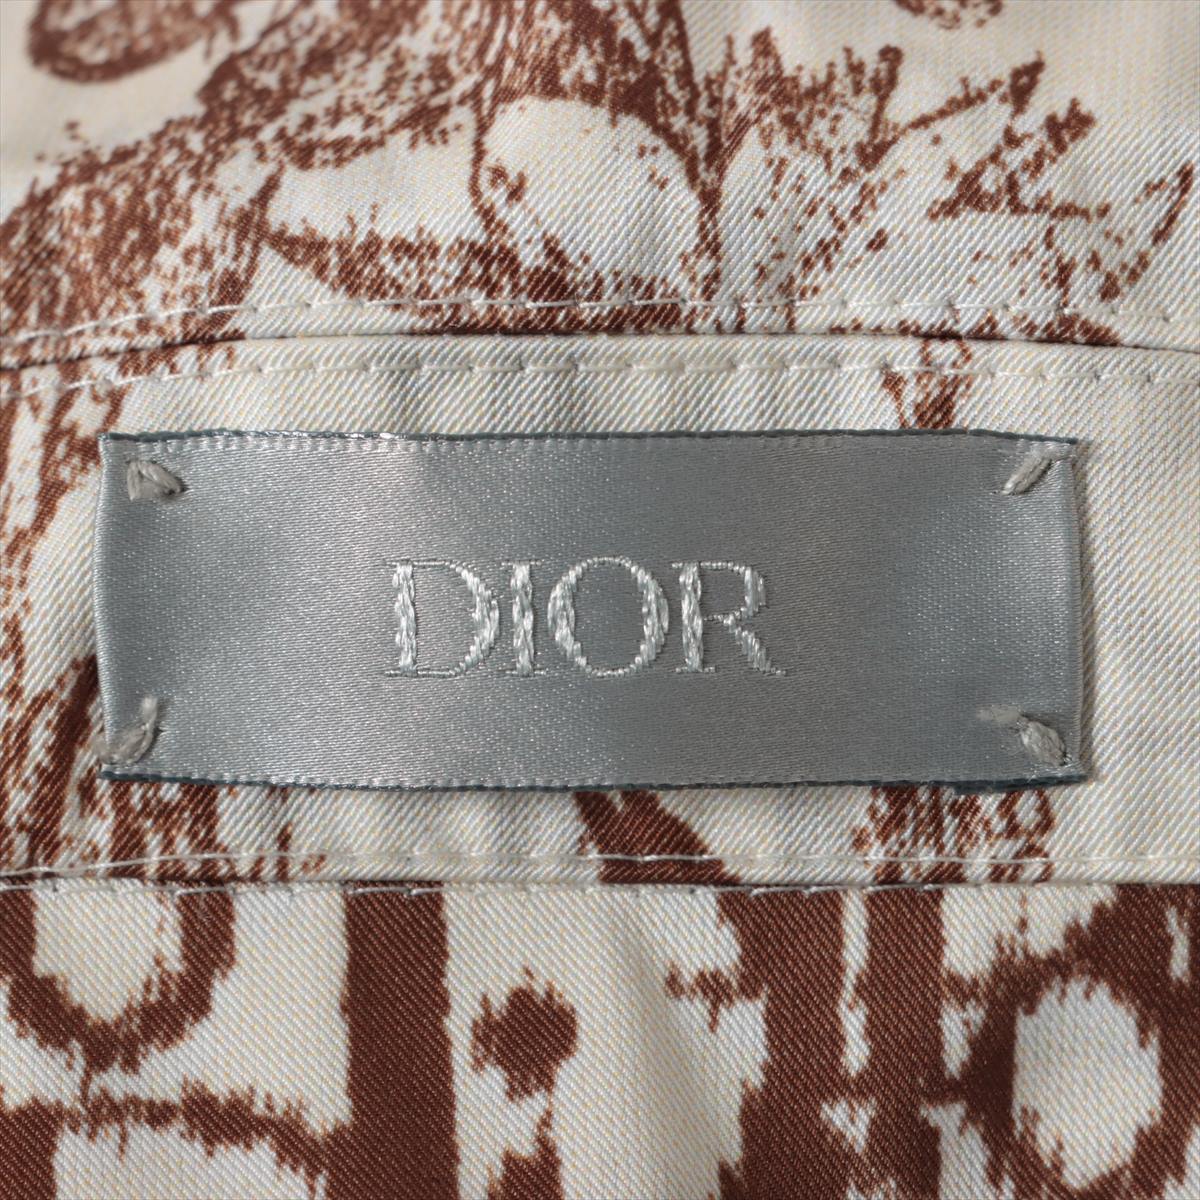 Dior x Travis Scott Polyester × Rayon Jacket 46 Men's White x beige  213C522C5531 Oblique lining